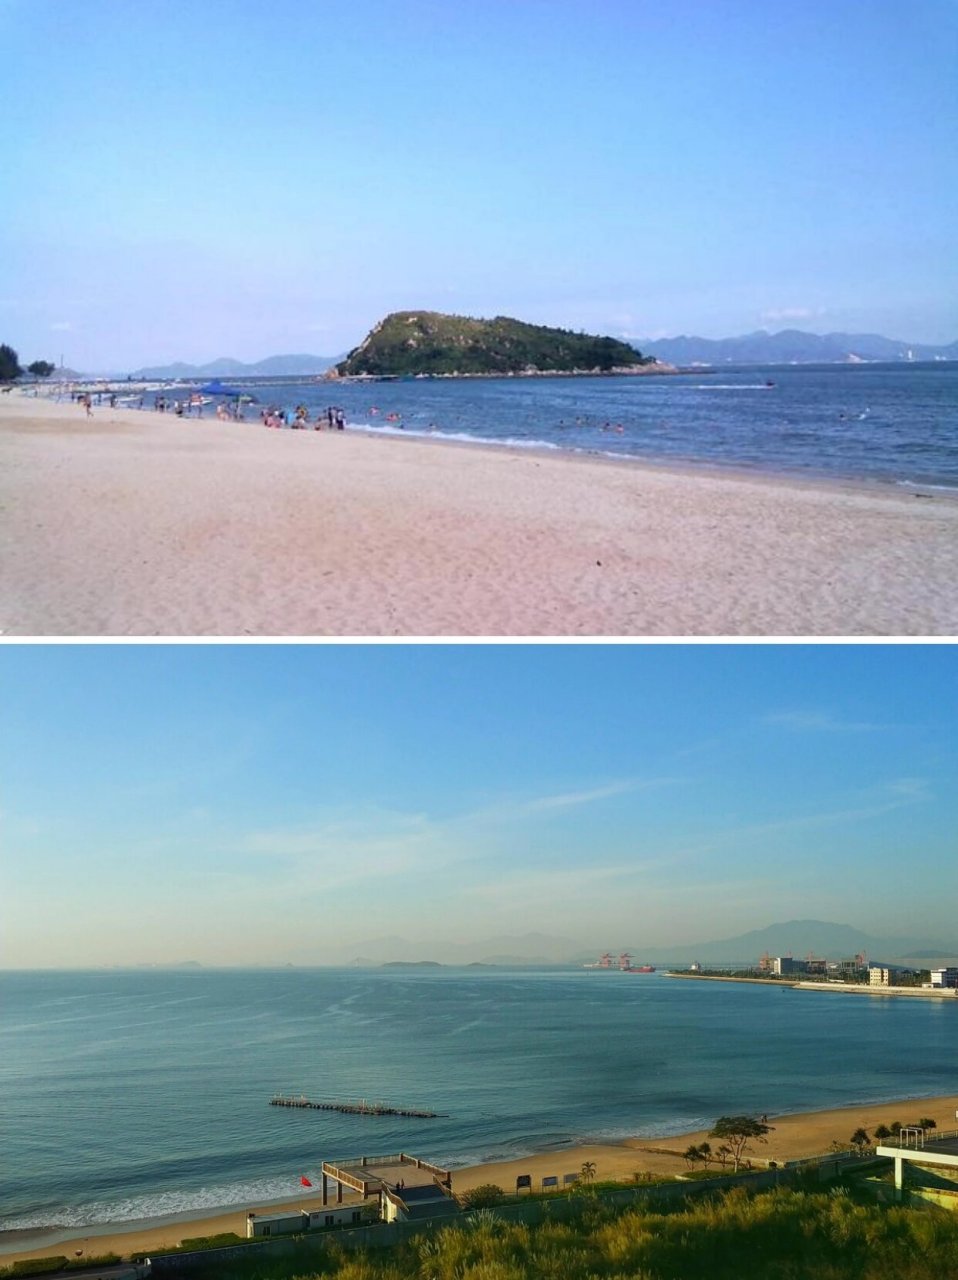 惠州霞涌碧海湾两天游05 今天给大家推荐一个好玩又小众的海滩,有空